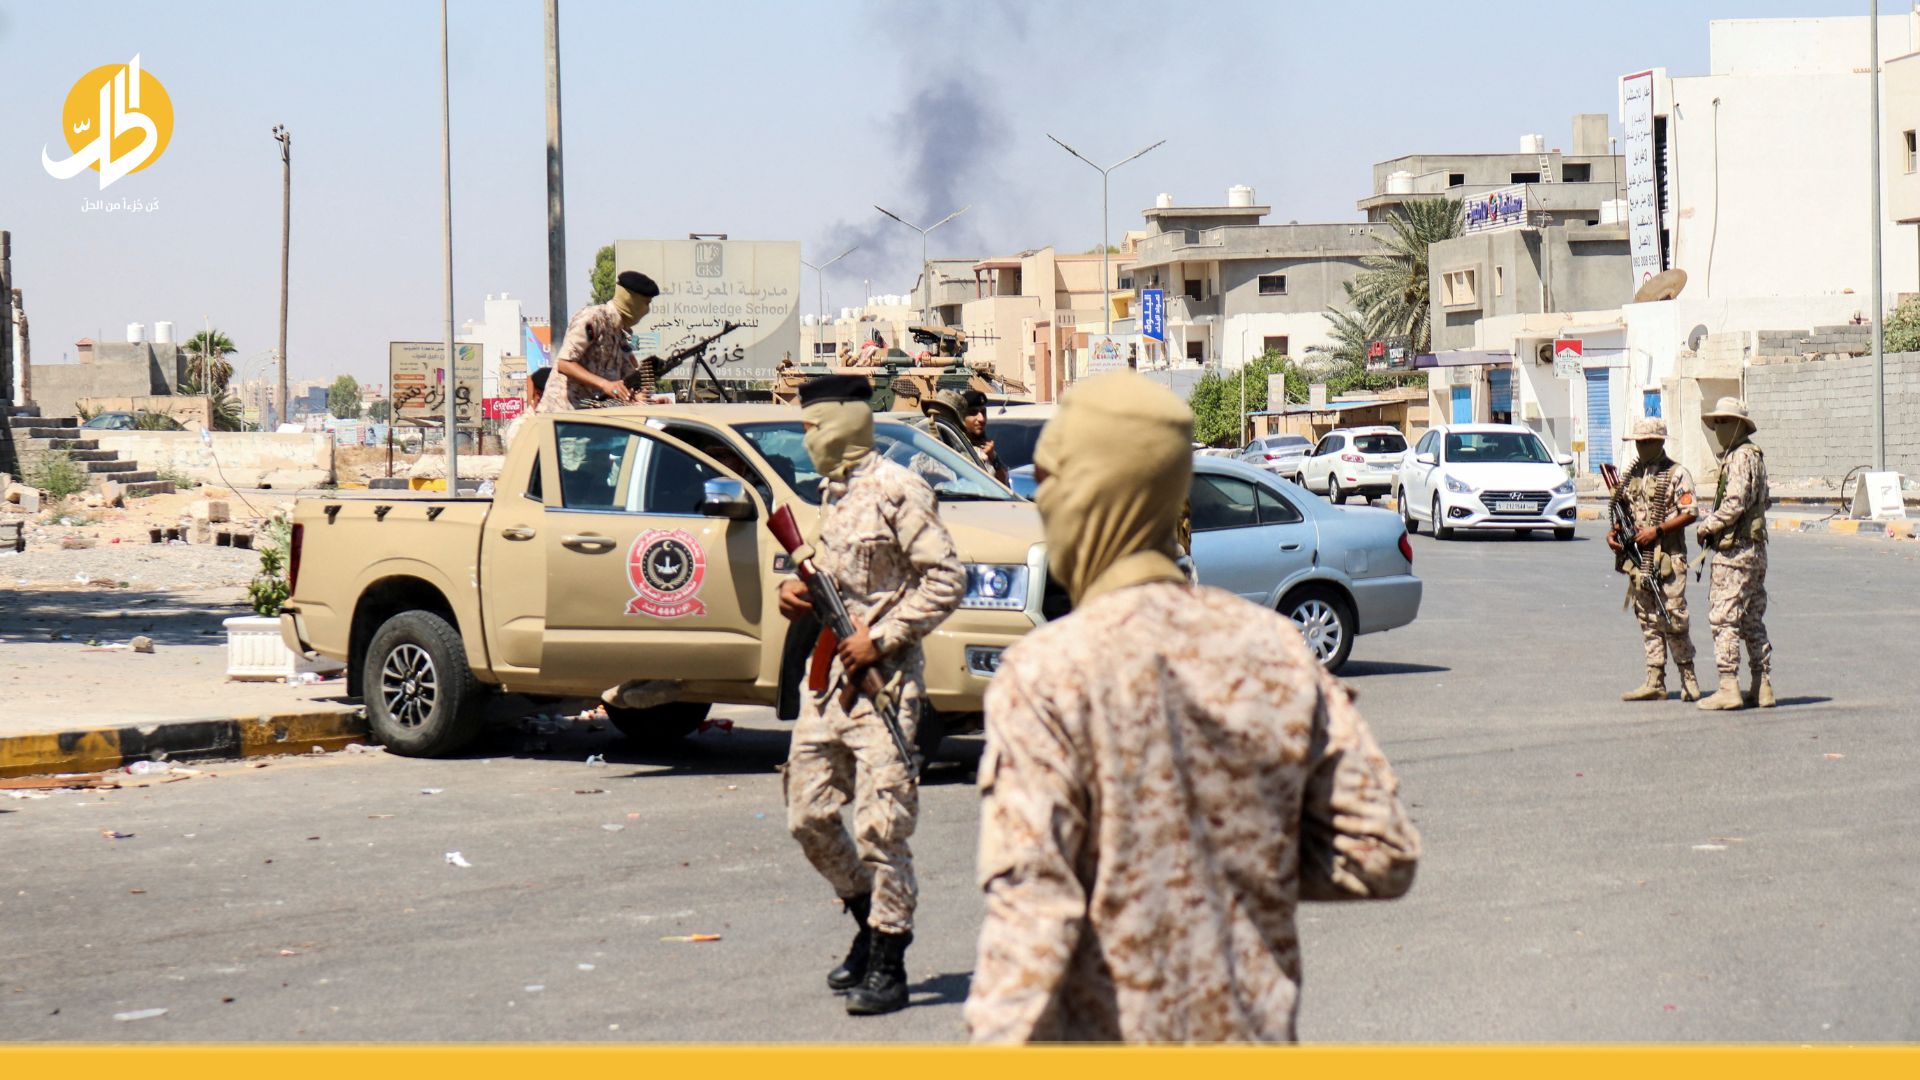 ليبيا.. تفاقم للوضع واشتباكات عنيفة بين مجموعات مسلحة